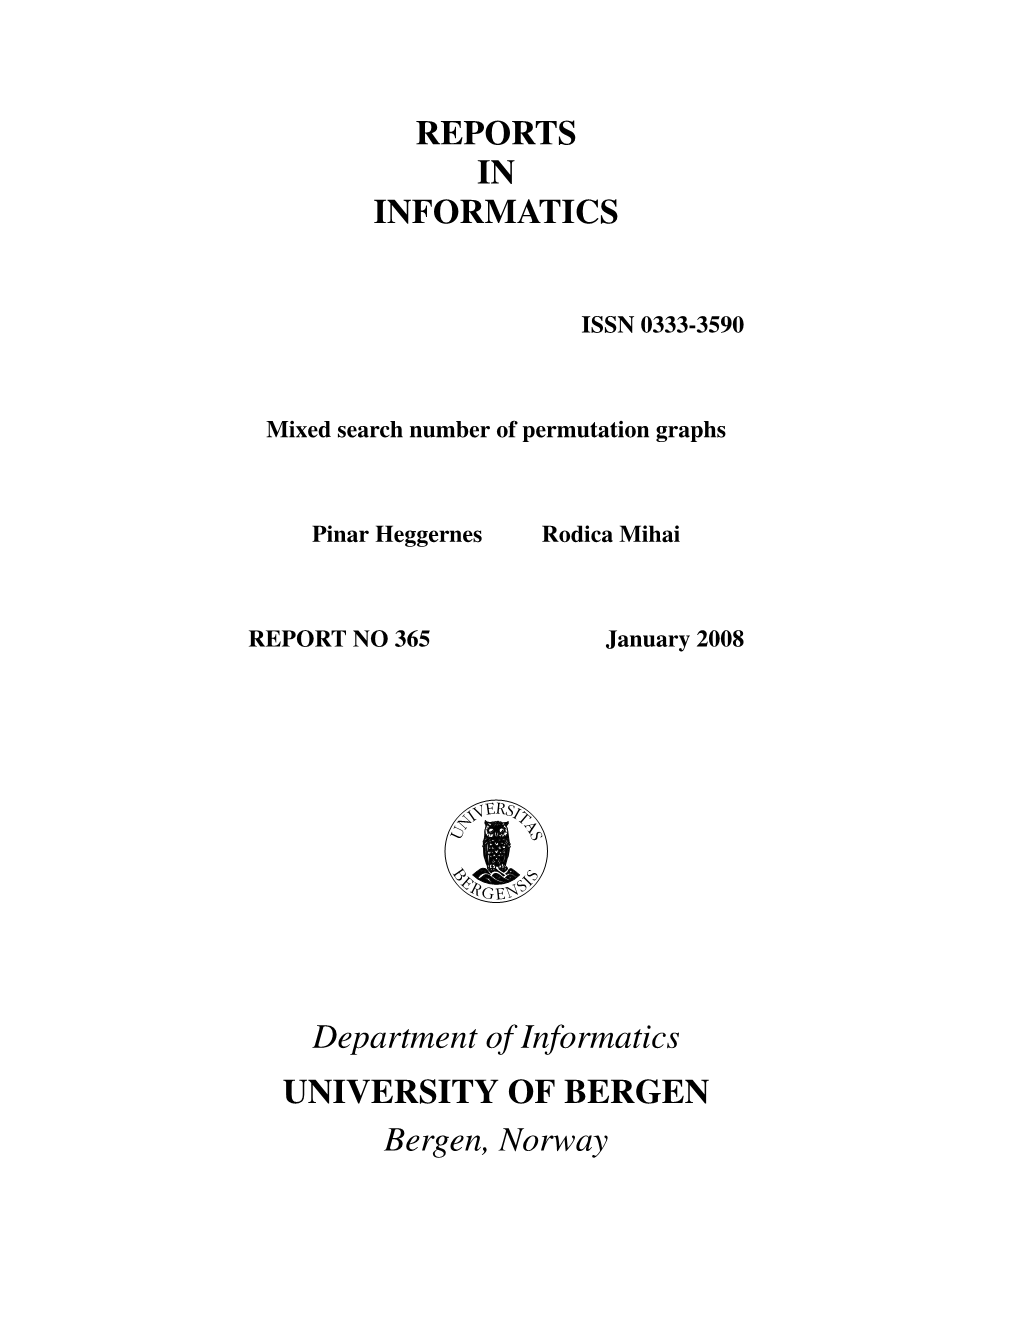 REPORTS in INFORMATICS Department of Informatics